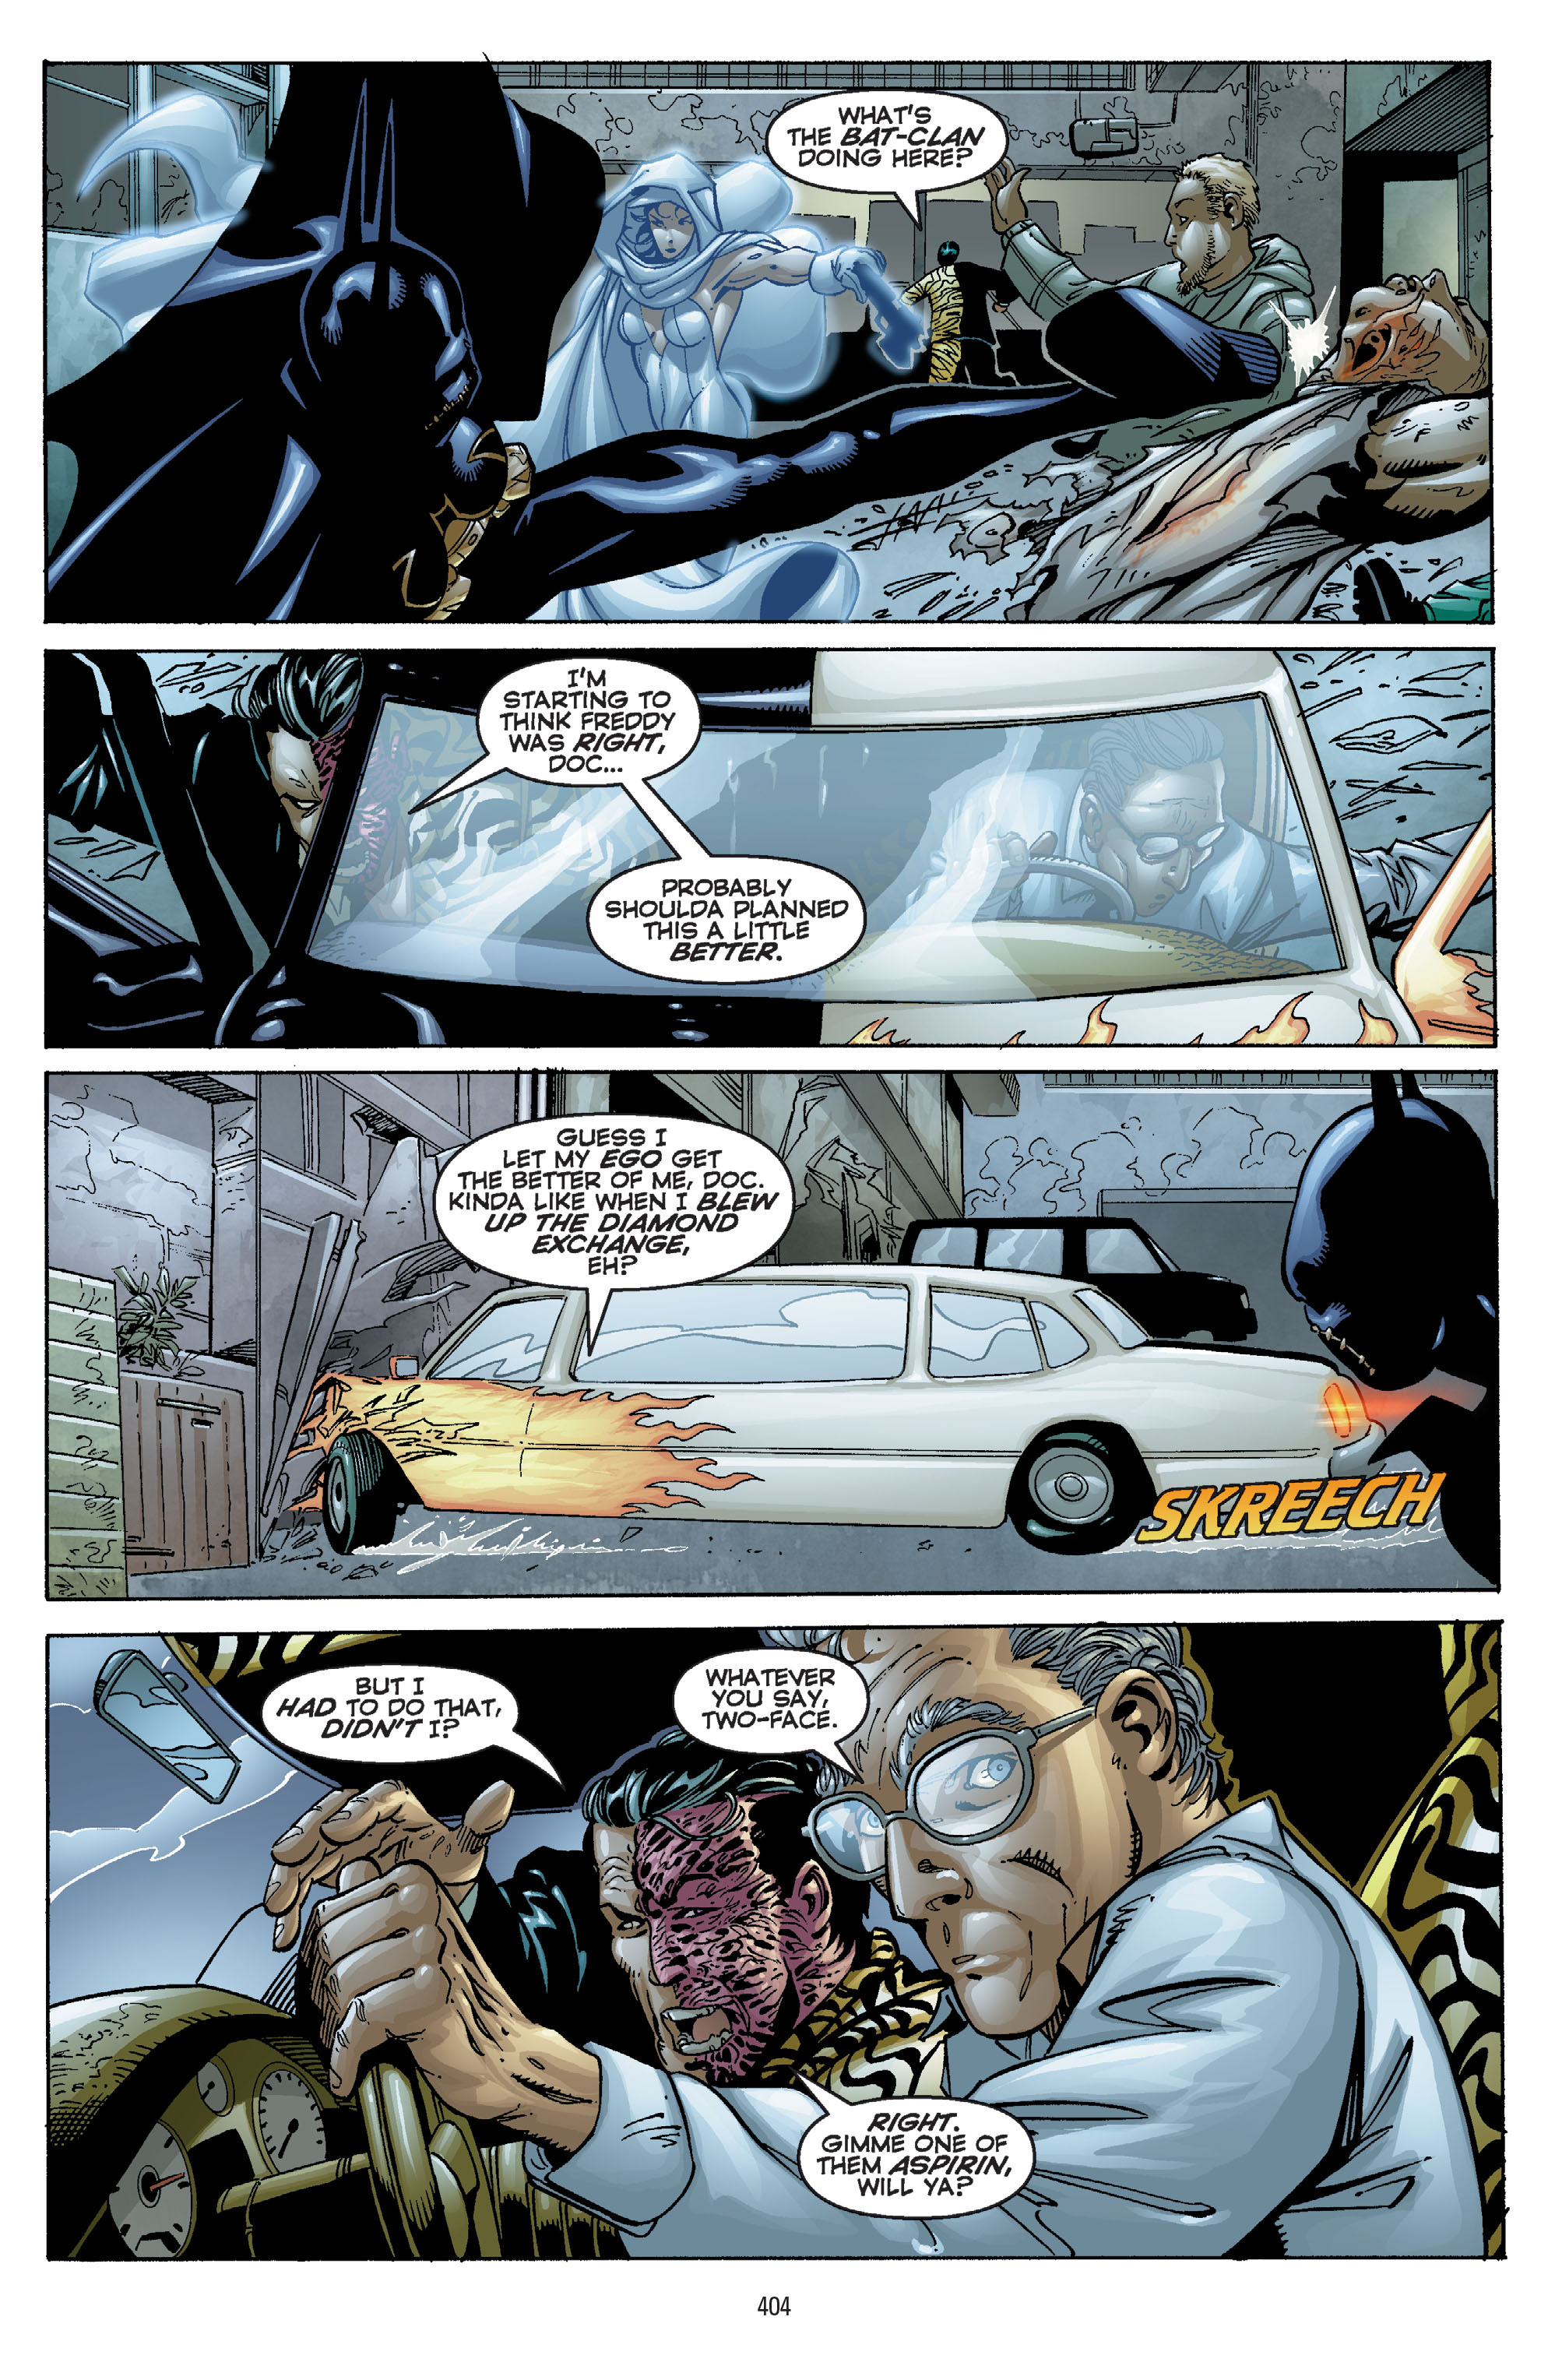 DC Comics/Dark Horse Comics: Justice League Full #1 - English 394